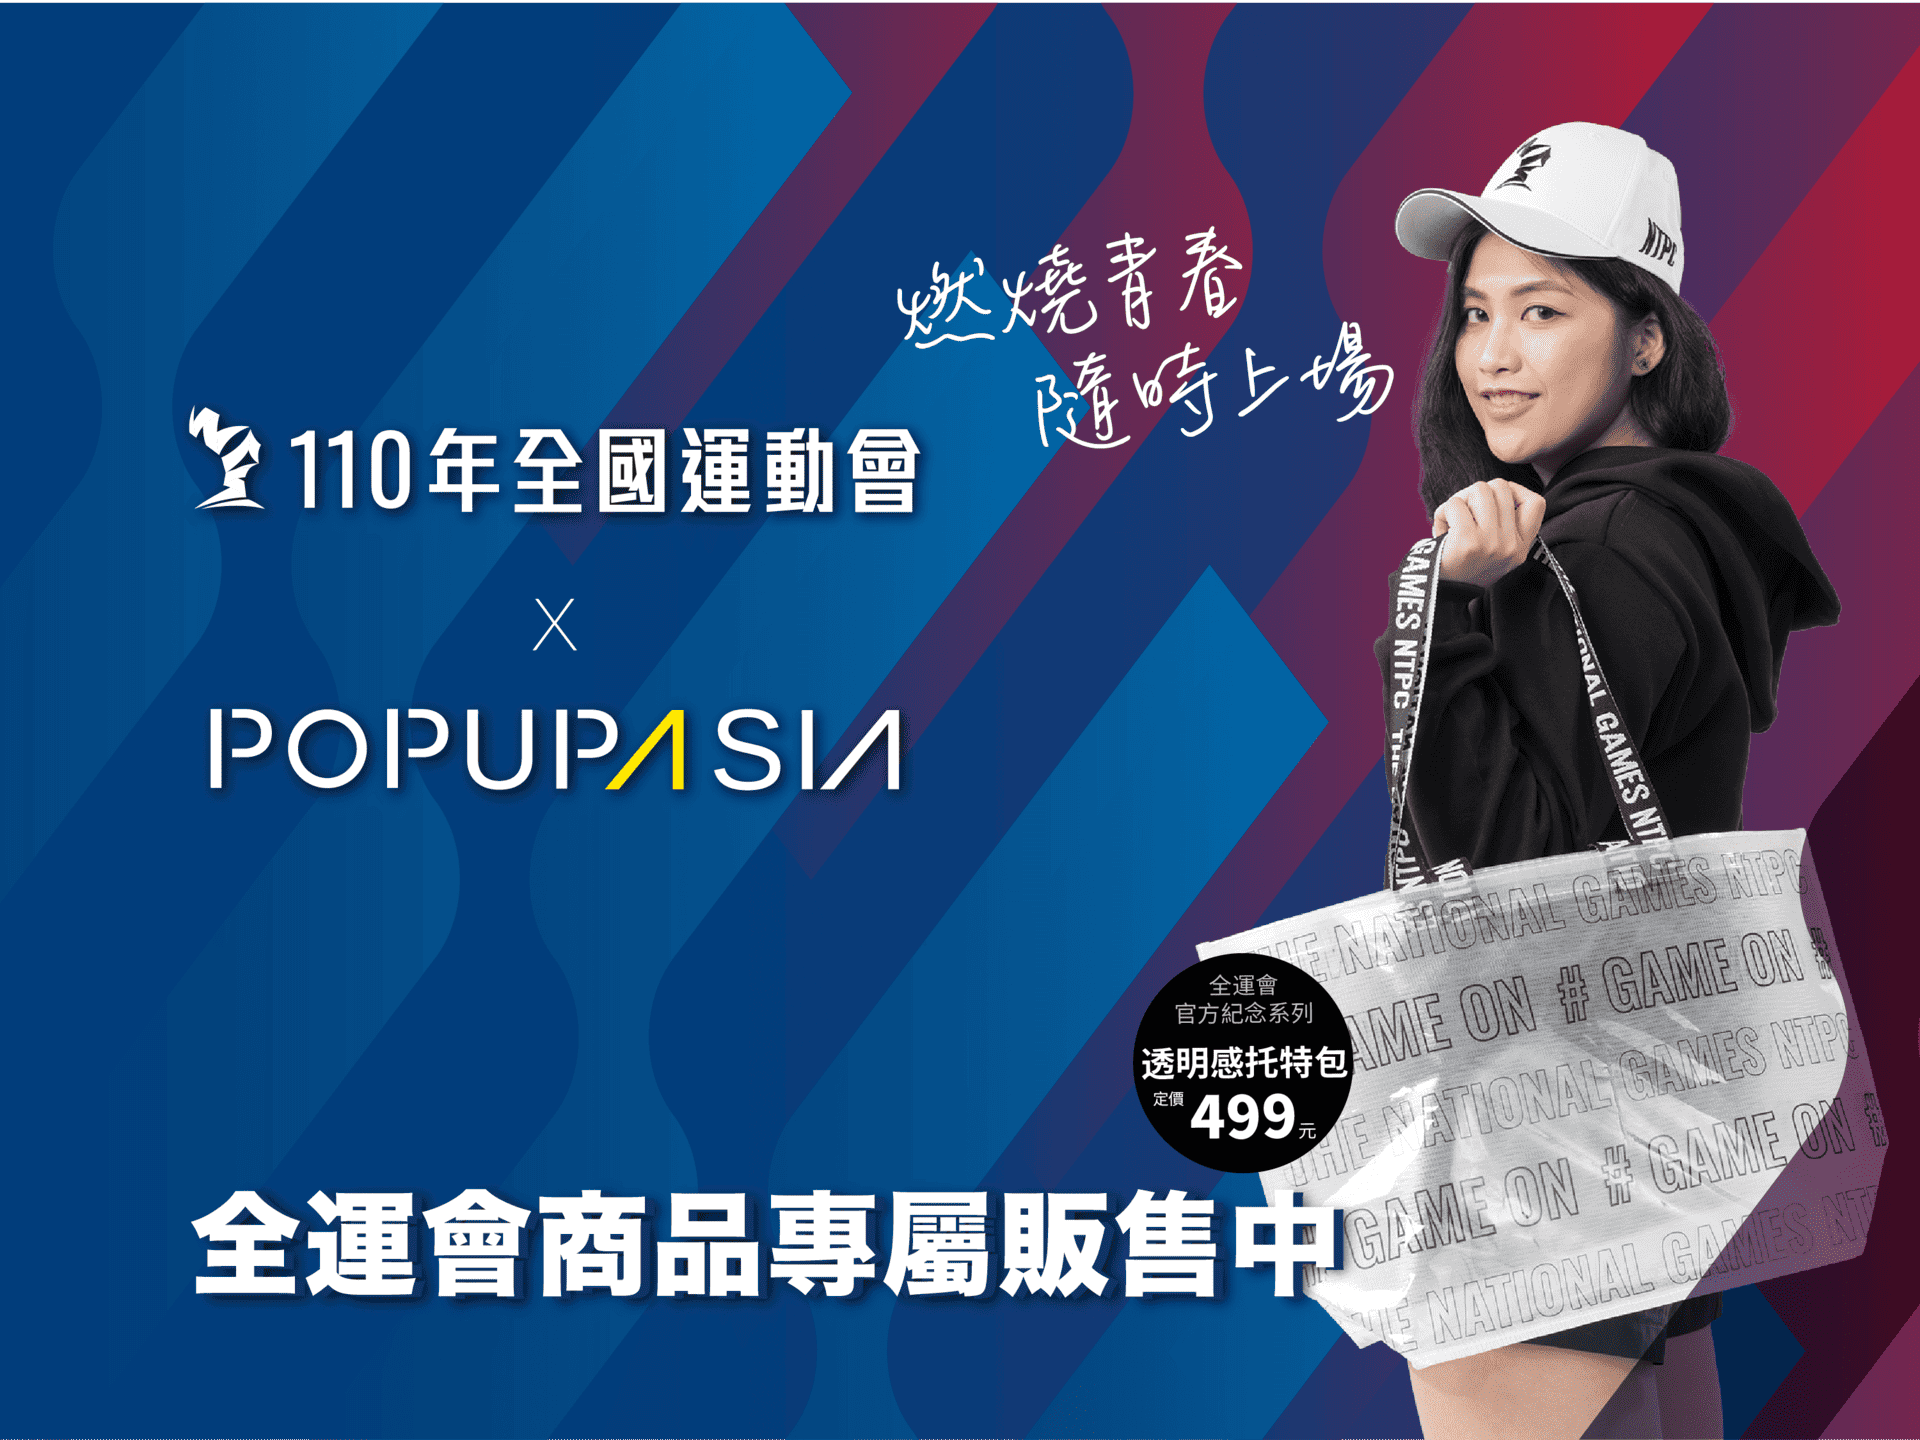 110全運會周邊商品上架 X 亞洲手創展線上商店Pop Up Asia Store